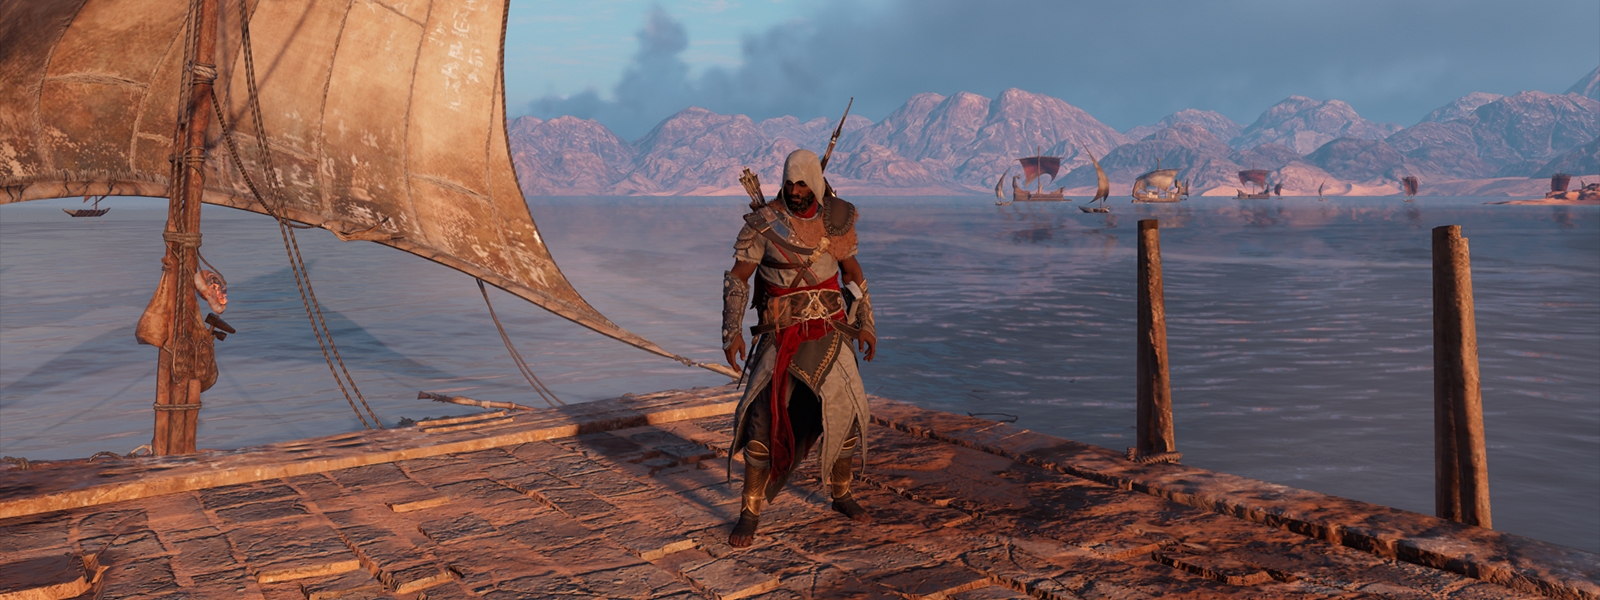 Assassins Creed Origins Незримые: все легендарное оружие, костюмы и маунты